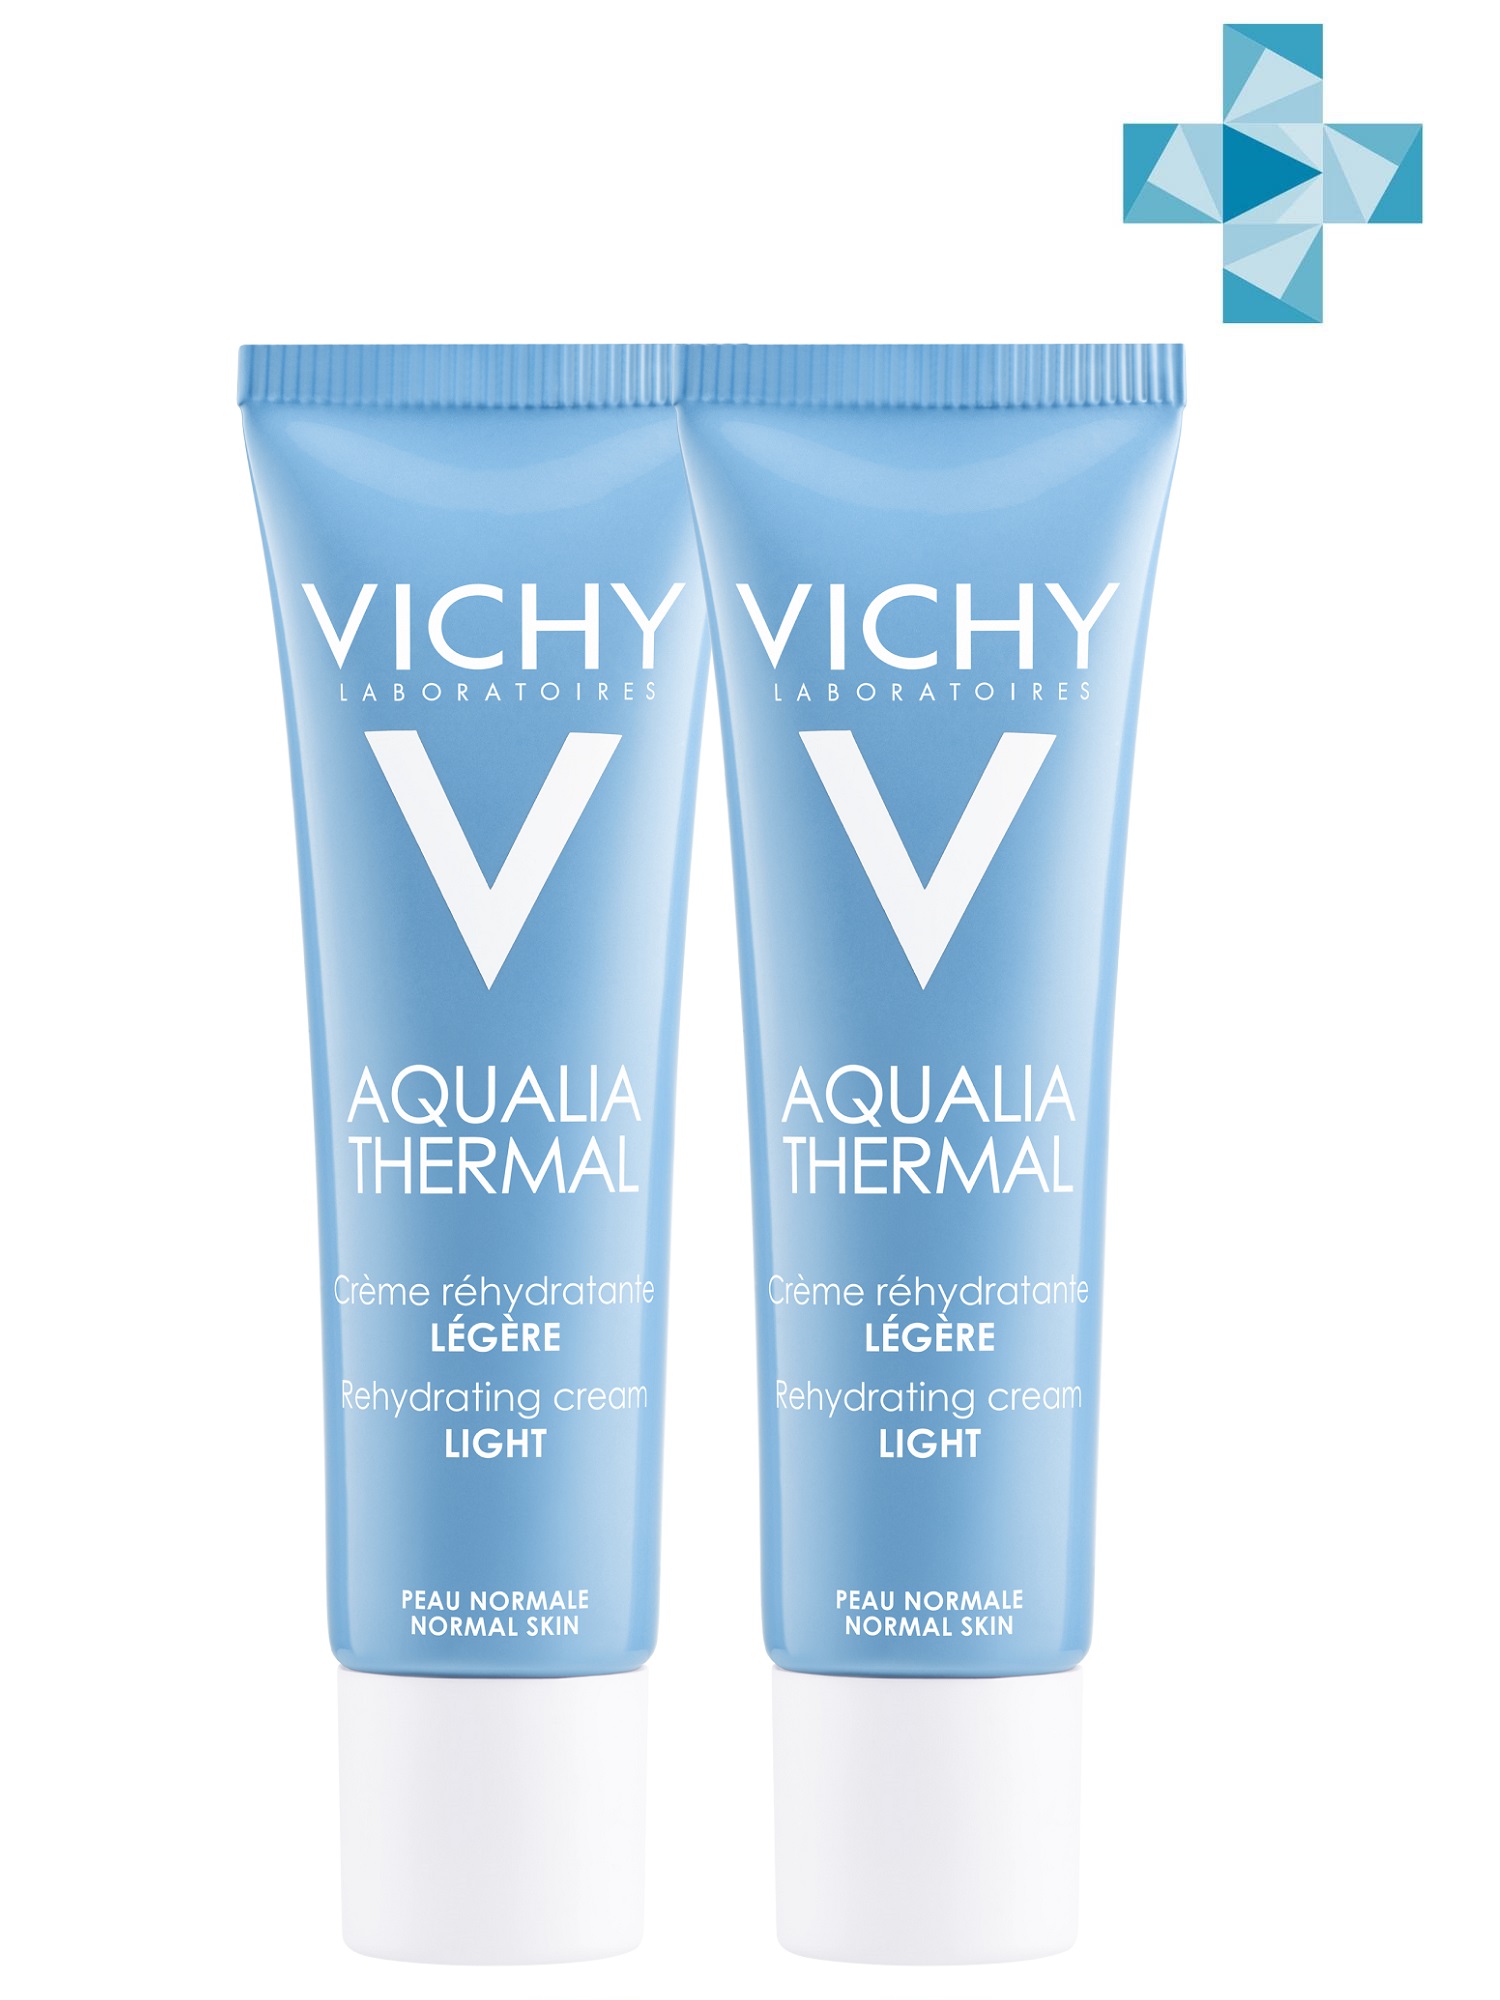 Vichy Комплект Аквалия Термаль Легкий крем для нормальной кожи, 2 шт. по 30 мл. фото